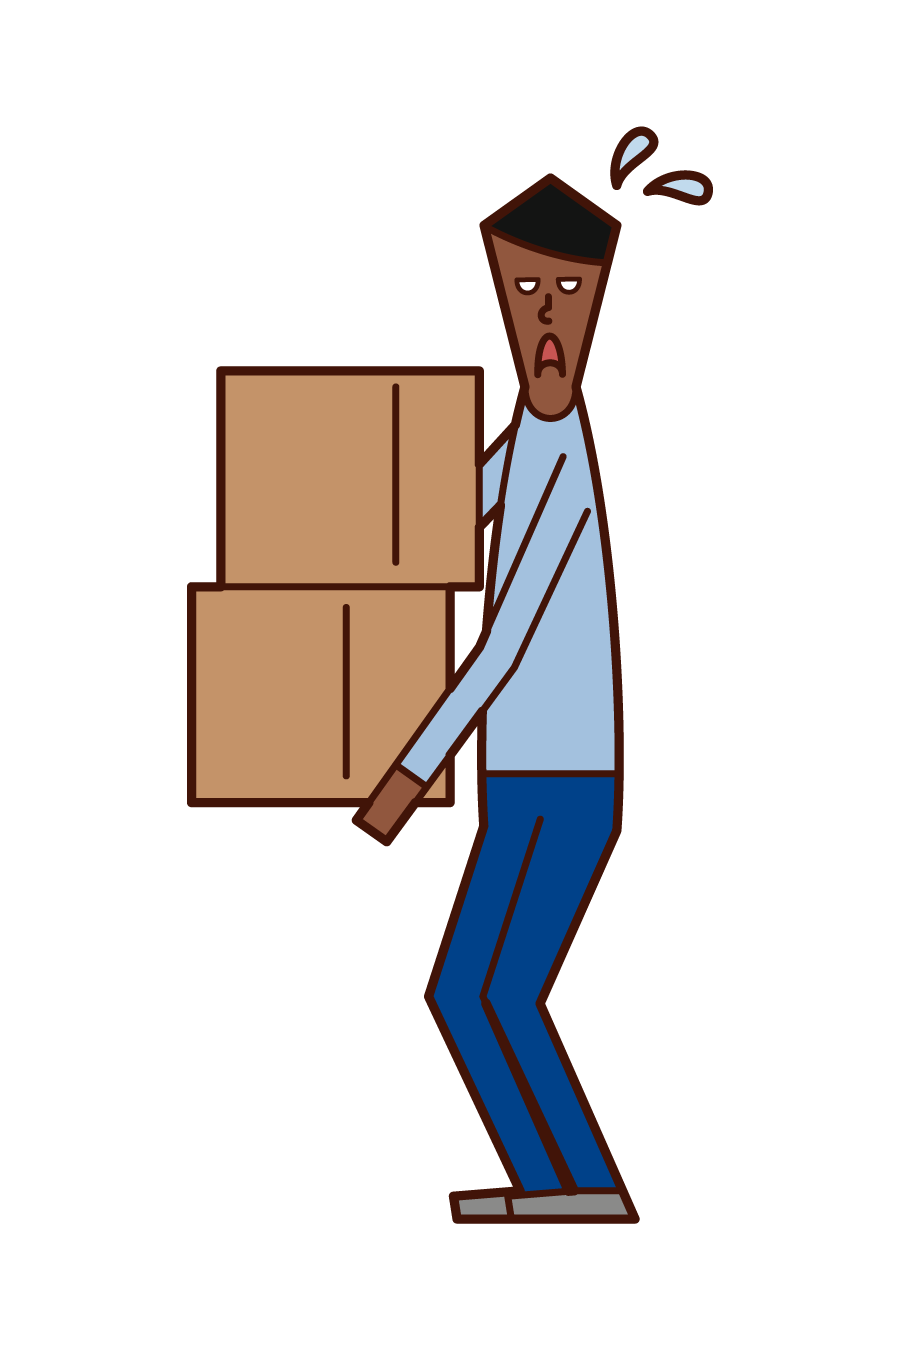 重い荷物を運ぶ人 男性 のイラスト フリーイラスト素材 Kukukeke ククケケ